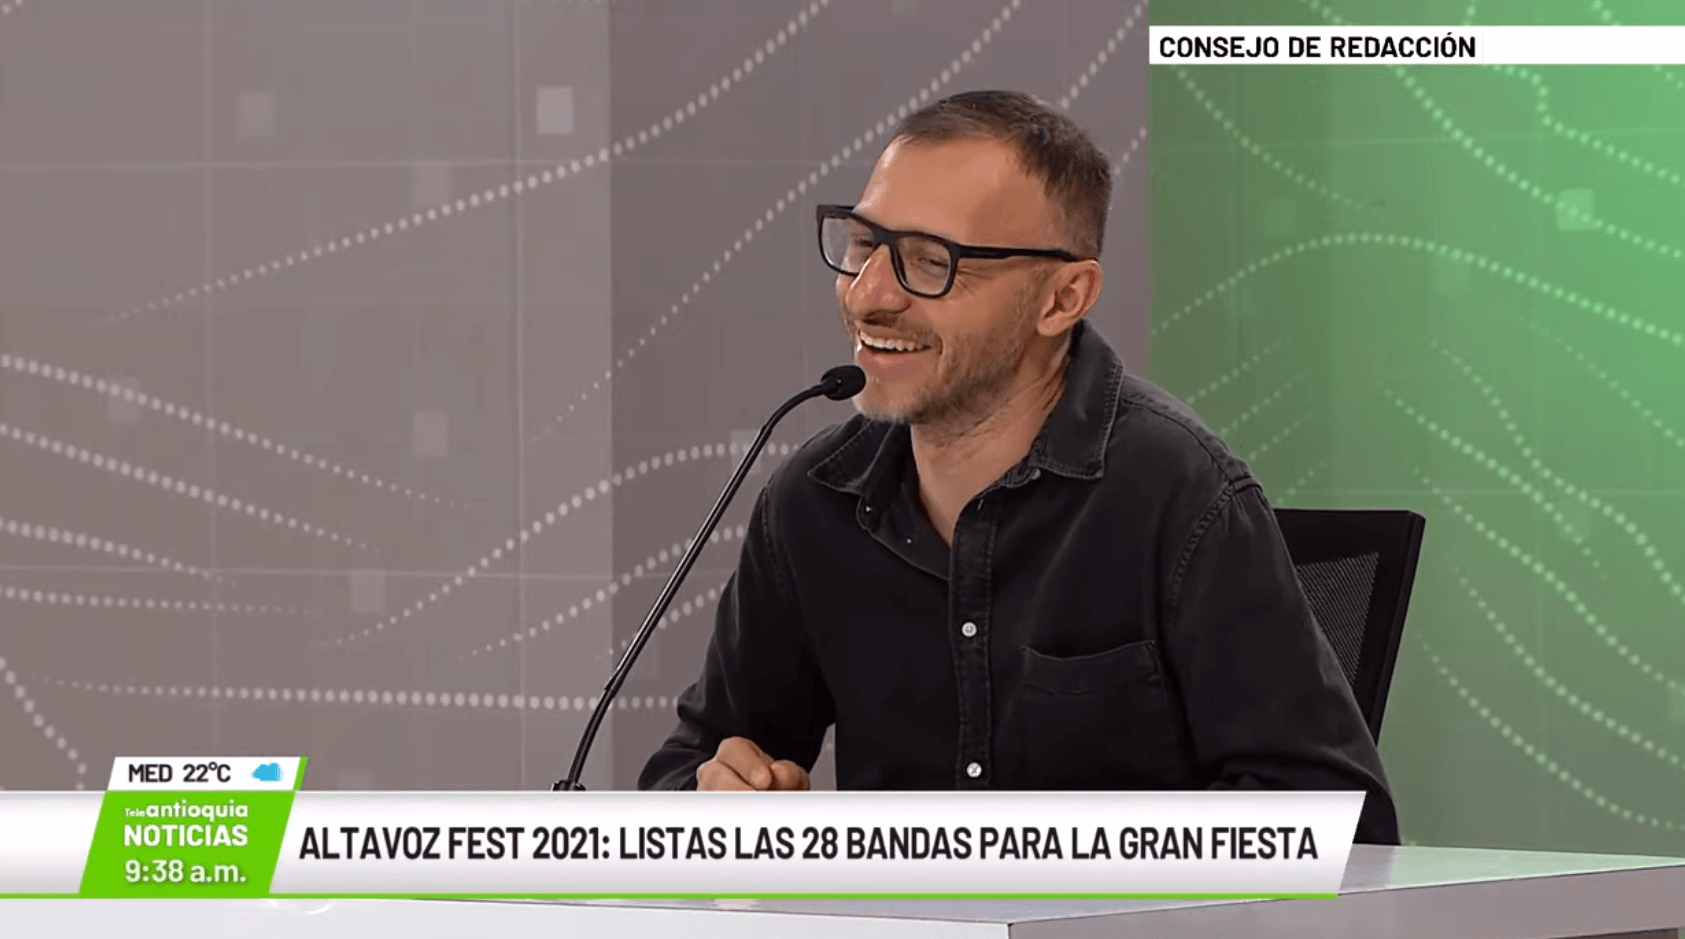 Entrevista con Felipe Grajales, director de Altavoz Fest 2021